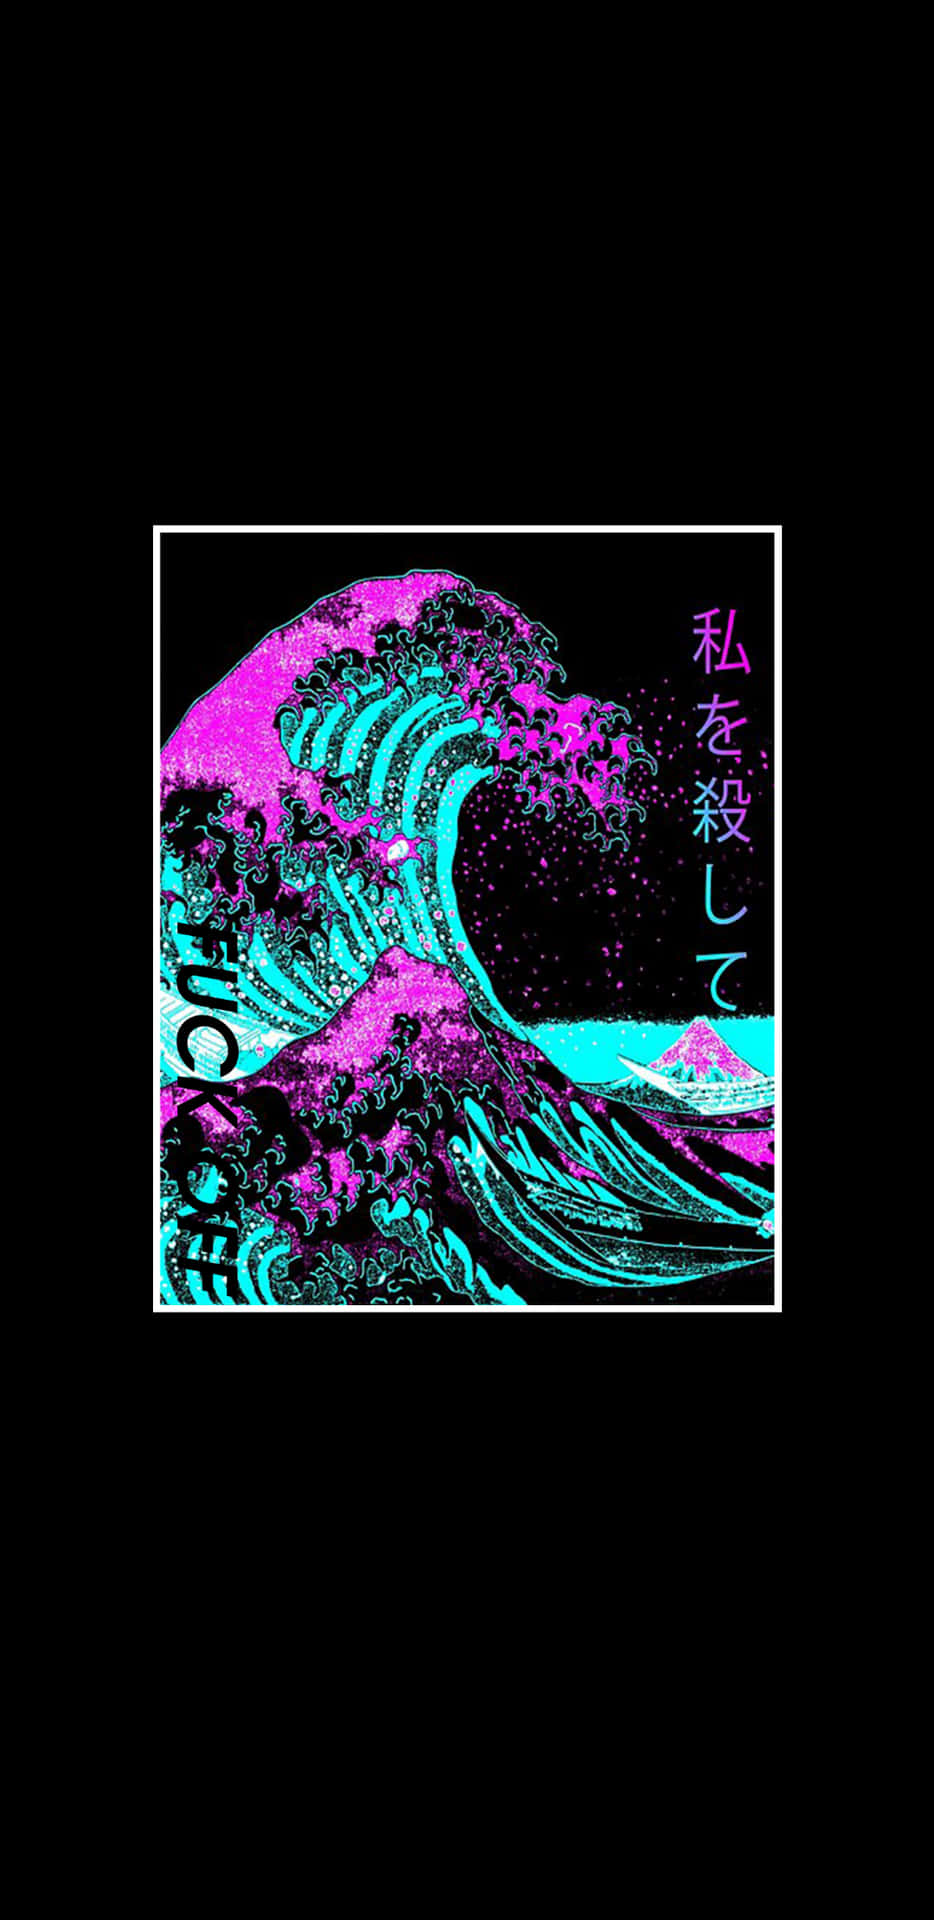 Vaporwaveiphone Wellen Off Kanagawa Bearbeitet. Wallpaper